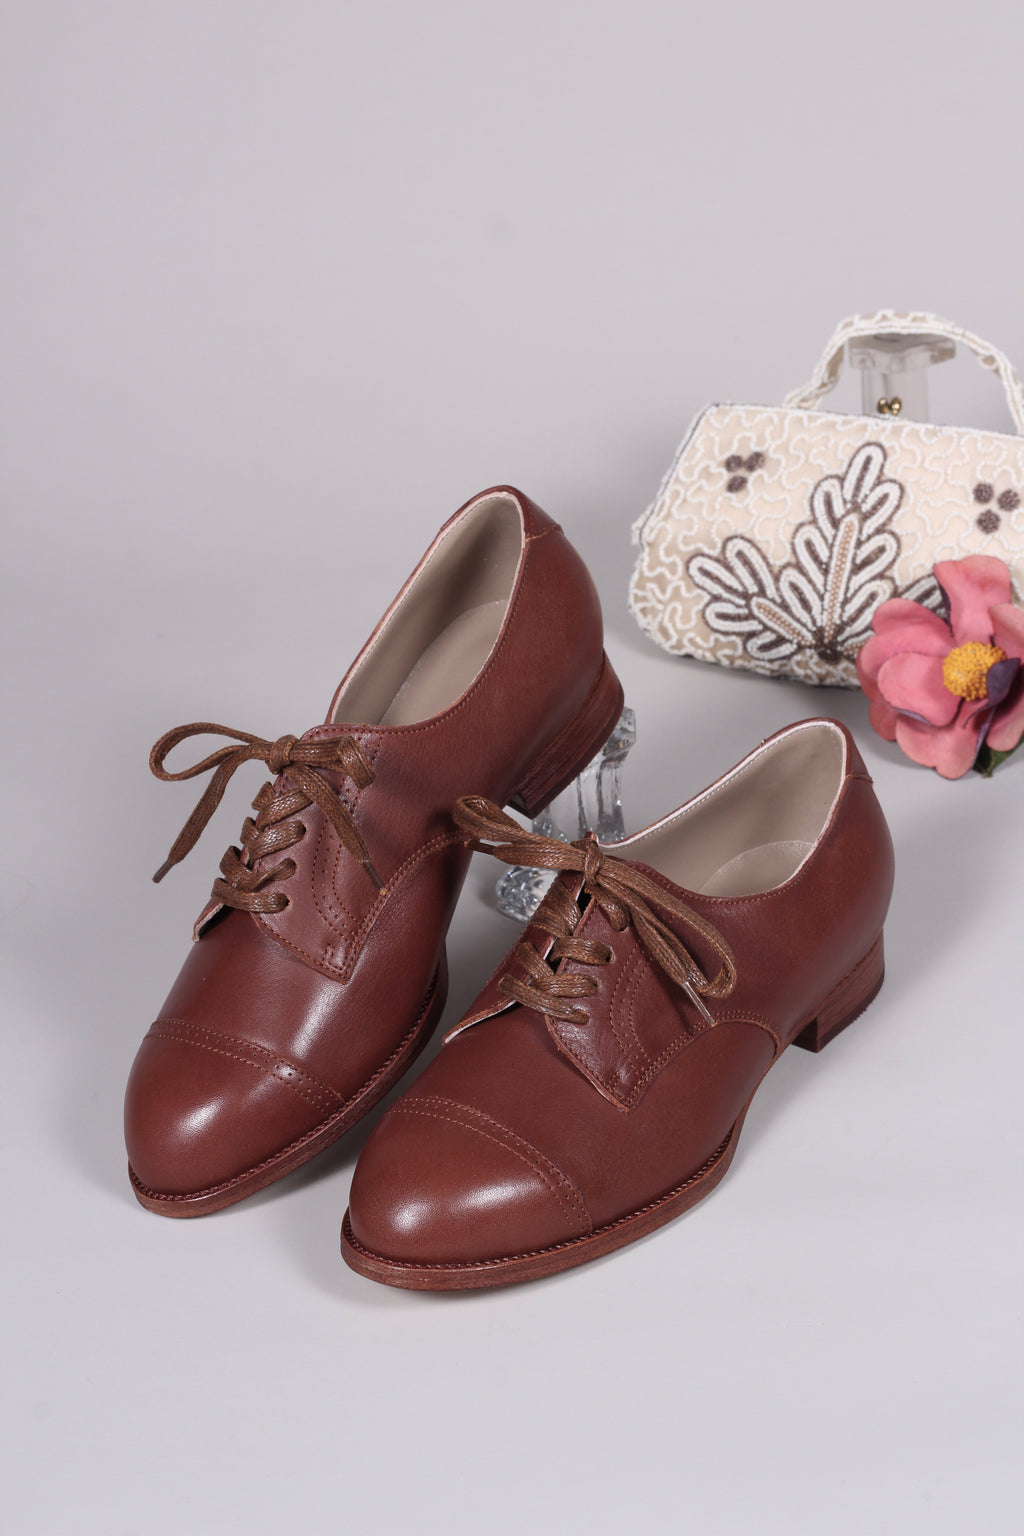 Calamity dukke regeringstid 1940'er sko - Sko fra 40'erne – memery